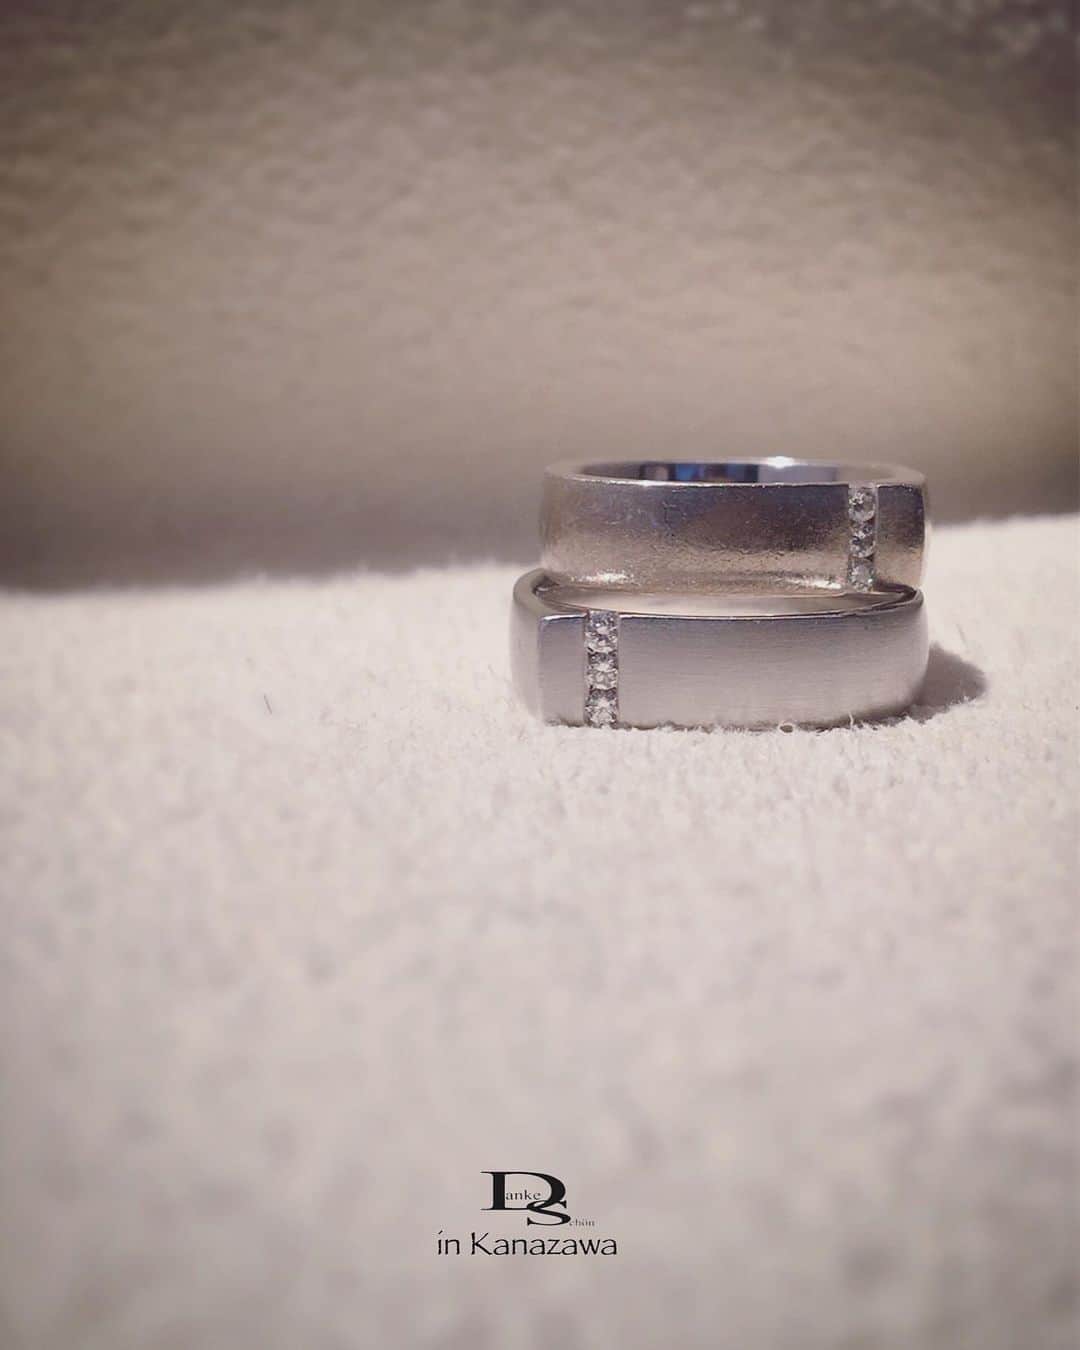 Danke schön ダンケ 金沢 結婚指輪 鍛造さんのインスタグラム写真 - (Danke schön ダンケ 金沢 結婚指輪 鍛造Instagram)「・ ・ 『もみの木』が 取り持つ御縁 ・ ・ 生涯共に…の指輪を お引き渡しをした日から ・ ・ 11年の年月が過ぎた今 又！『もみの木』が御縁で ・ ・ 年月が流れでも 再会出来る店を作りたい ・ ・ こんな再会が出来たらいいなぁと 思った企画がクリスマスツリーの販売 ・ ・ やっぱり『もみの木』パワーは 偉大🙌🏻もみの木の下に集う 仲間は最高です。 ・ ・ 変わらず 愛しい人達ばかり ・ ・ 📷3: 記念の年月 桁が増えて来た頃から 『もみの木』印の指輪の本領発揮 ・ ・ バウアー社に技術があっても この質感は身につけ続けてくれた 指輪に宿る質感 ・ ・ この質感が生まれこそ クリスチャンバウアーの指輪は ようやく完成するのだと 改めて感じさせてくれた指輪 ・ ・ 私自身にとって 今日の再会は 心に残る記念すべき日 ・ ・ 遥々会いに来てくれた 気持ちが何よりも嬉しい🥰 ・ ・ 帰り際には 『これからも応援してます。 頑張って欲しい』 ・ ・ 『会ったら私も頑張ろうって思えて やっぱり来て良かった』と ・ ・ お互いに感極まる場面あり ・ ・ こんな関係が会えなくても 11年の年月の間で育っていたとは ・ ・ 素晴らしき仲間 愛しき仲間 ・ ・ 『ドイツが誇る究極な輪 そして、人の輪へ』 ・ ・ この信念貫いてきて 良かったと感じた再会でした。 ・ ・ ・ 鍛造削り出し 🇩🇪クリスチャンバウアー 専門店 『  Danke schön 』 ・ ・ ・ ——Danke————————————— ▪︎トップページ 🔜 @danke2005 ———————————schön———— ・ ・ ・ #christianbauer_kanazawa #クリスチャンバウアー金沢 #金沢結婚指輪 #結婚指輪 #婚約指輪 #鍛造指輪 #記念日 #結婚指輪探し #再会 #エンゲージリング #結婚式延期 #結婚指輪手作り  #クリスマスツリー #ポルシェ #メルセデスベンツ #岐阜 #クリスマス2020 #切削 #ポリッシュ #結婚指輪金沢  #金沢 #福井結婚指輪 #富山結婚指輪 #もみの木 #福井 #富山 #kanazawa #経年変化 ・ ・ ------------------------------------------ 鍛造削り出し 🇩🇪クリスチャンバウアー 専門店 『  Danke schön 』 ・ • 営業時間 am11:00〜pm9:00 • 定休日 : 木曜日 • 駐車場 : 店舗前OK • ご予約 : 優先 ・ ・ ——Danke————————————— ▪︎トップページ 🔜 @danke2005 ———————————schön————」11月25日 23時42分 - danke2005